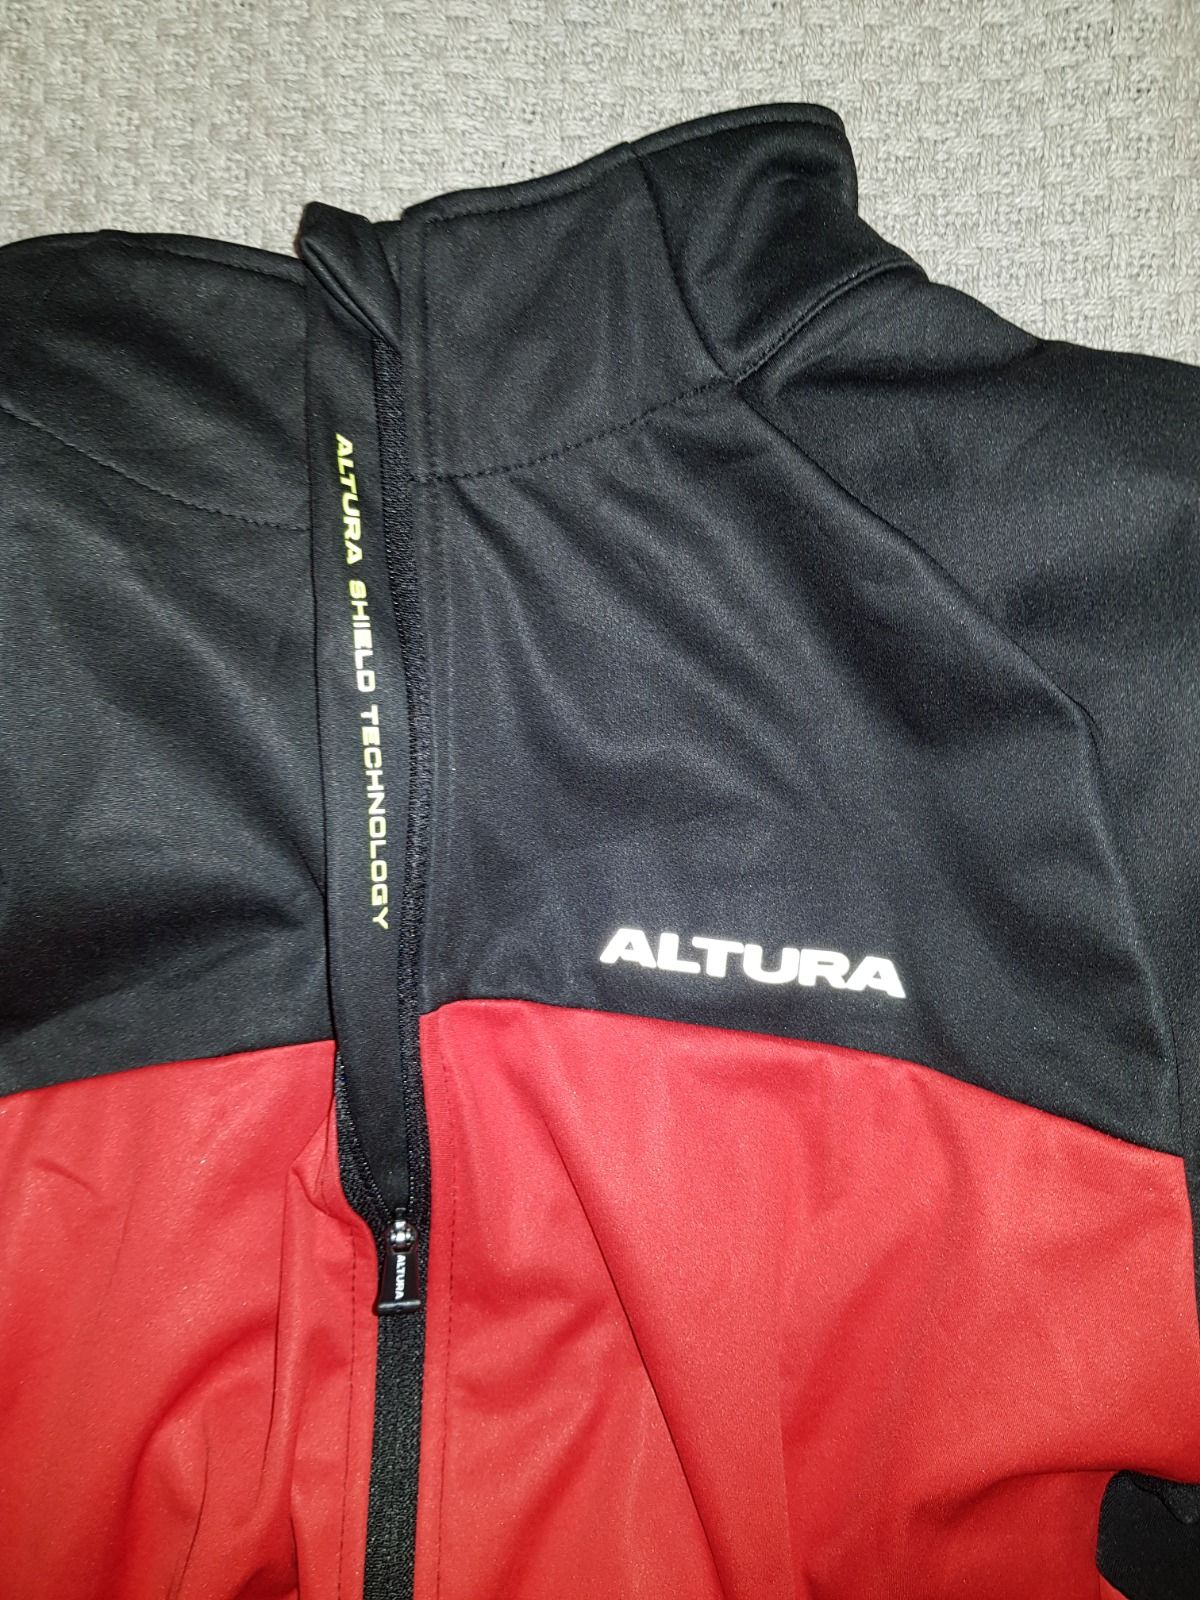 Куртка Altura Podium Elite Thermo Shield.